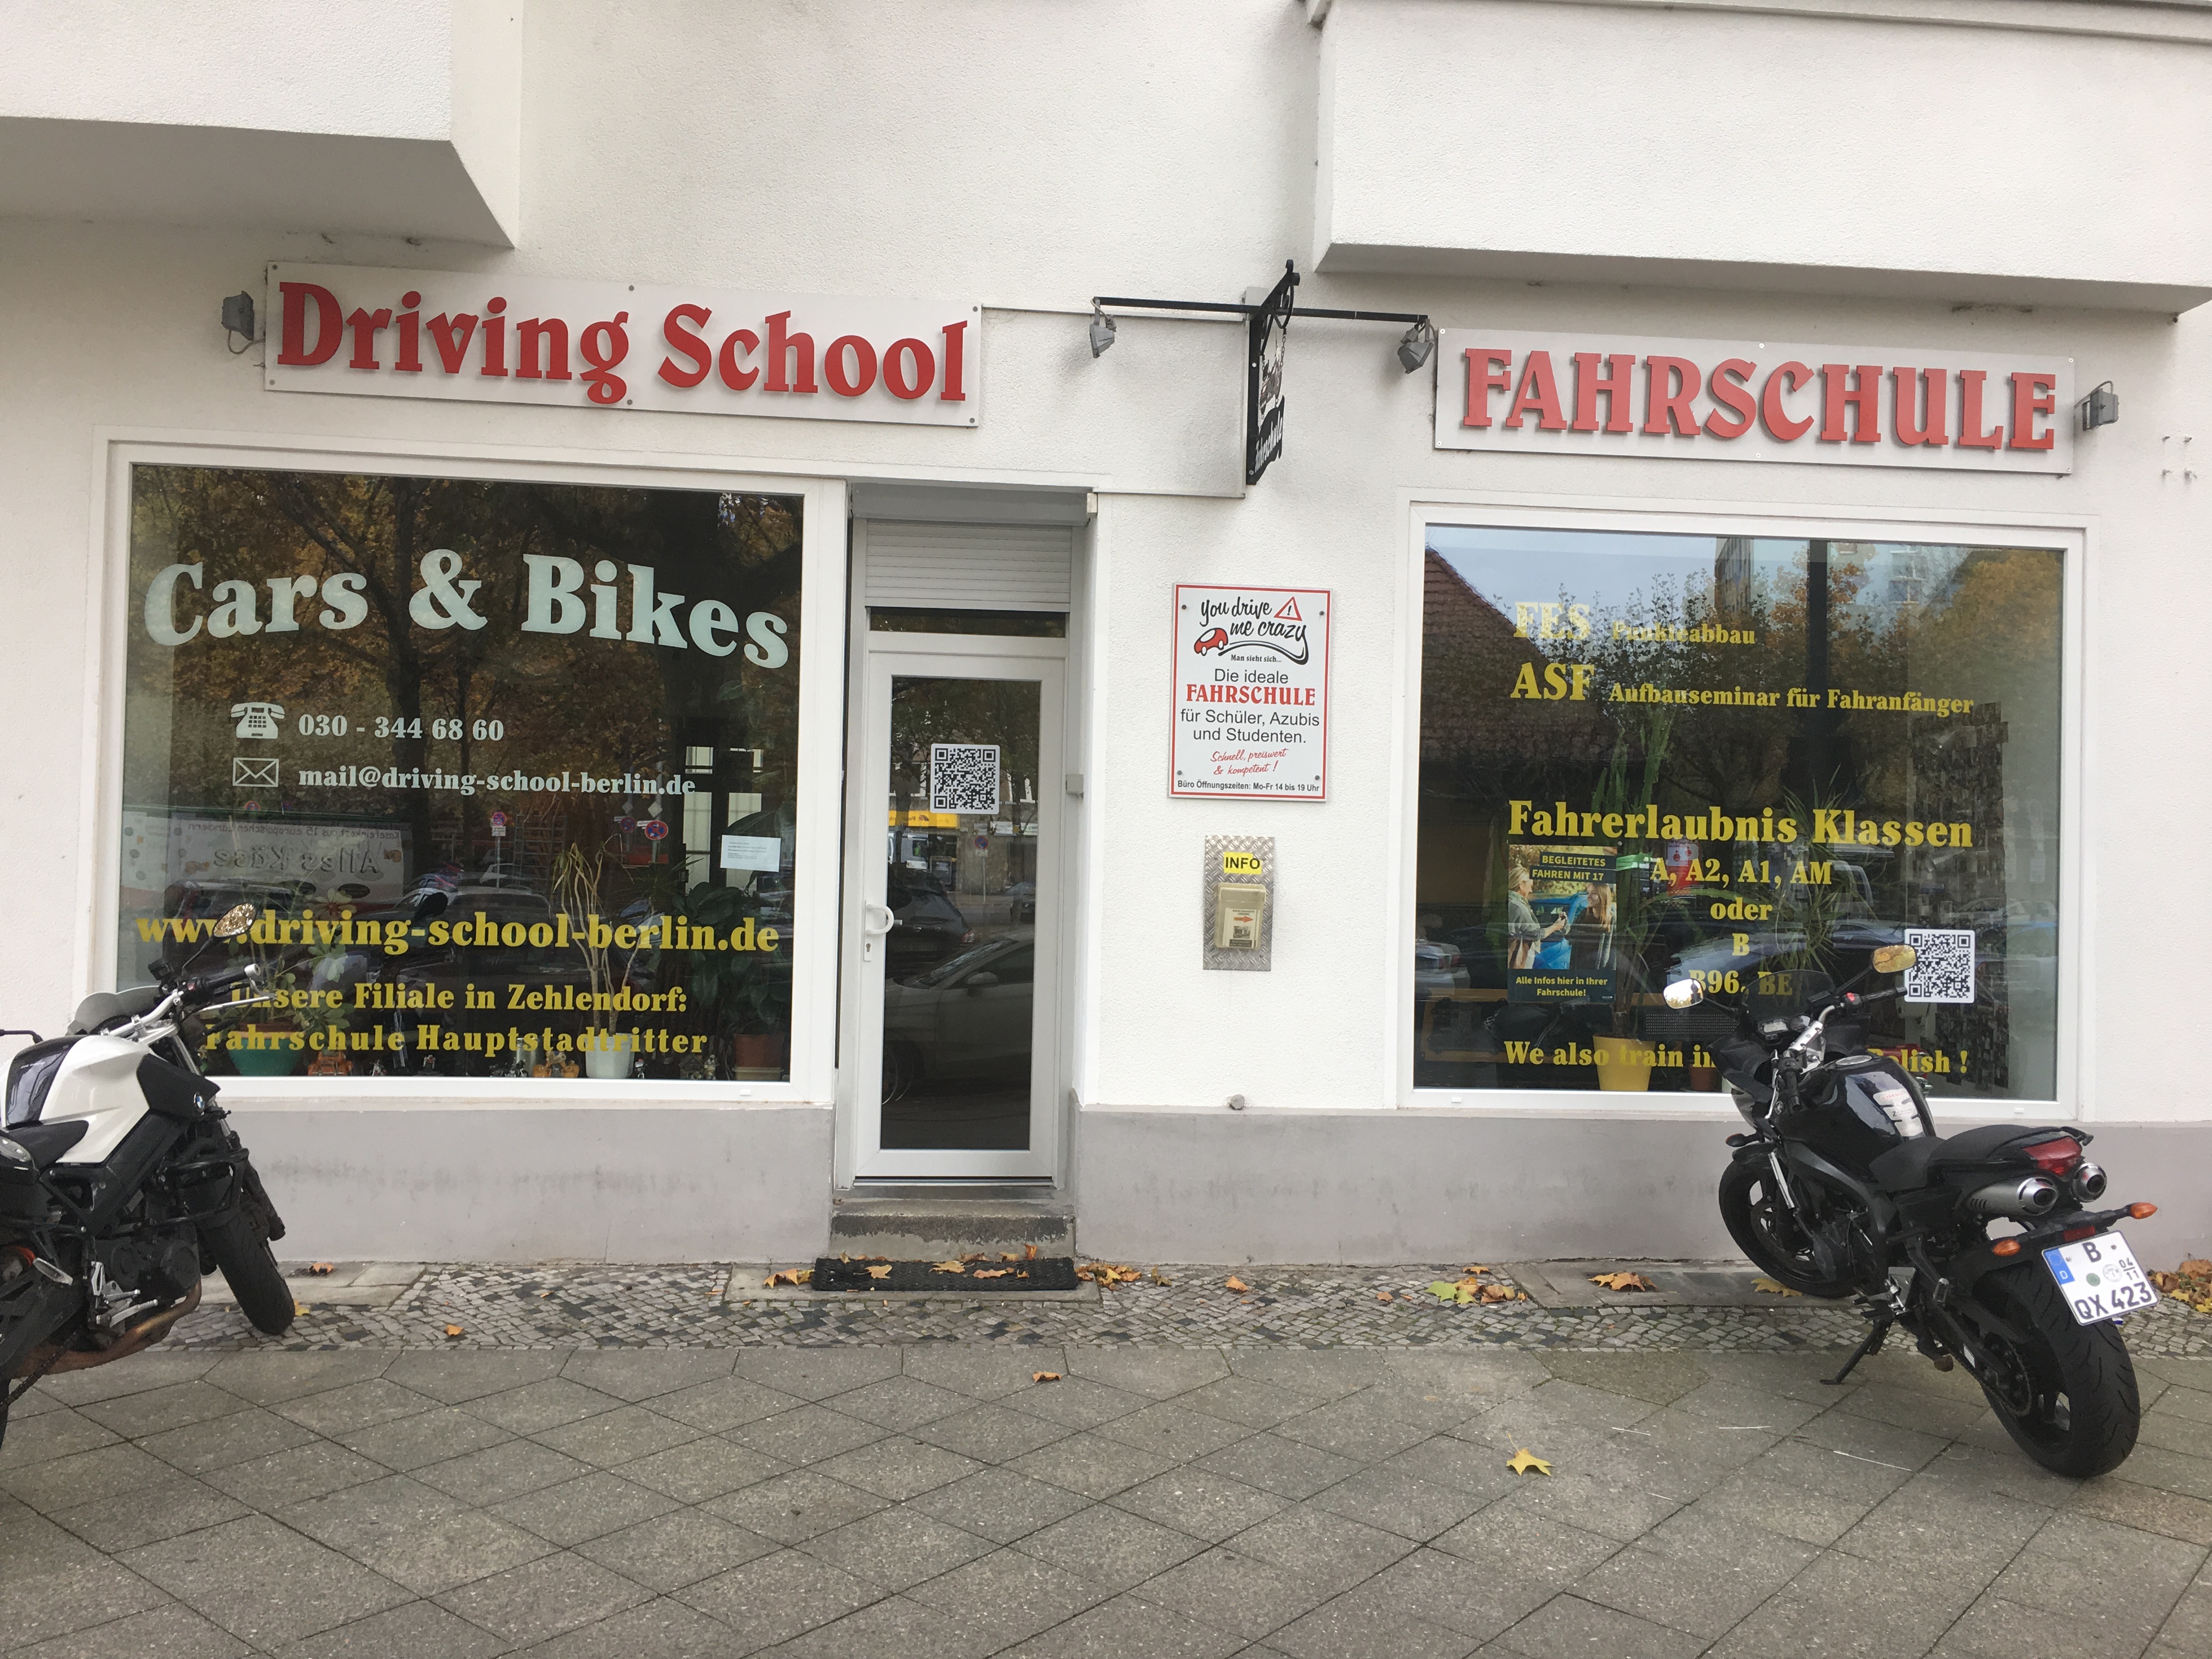 Driving School Berlin